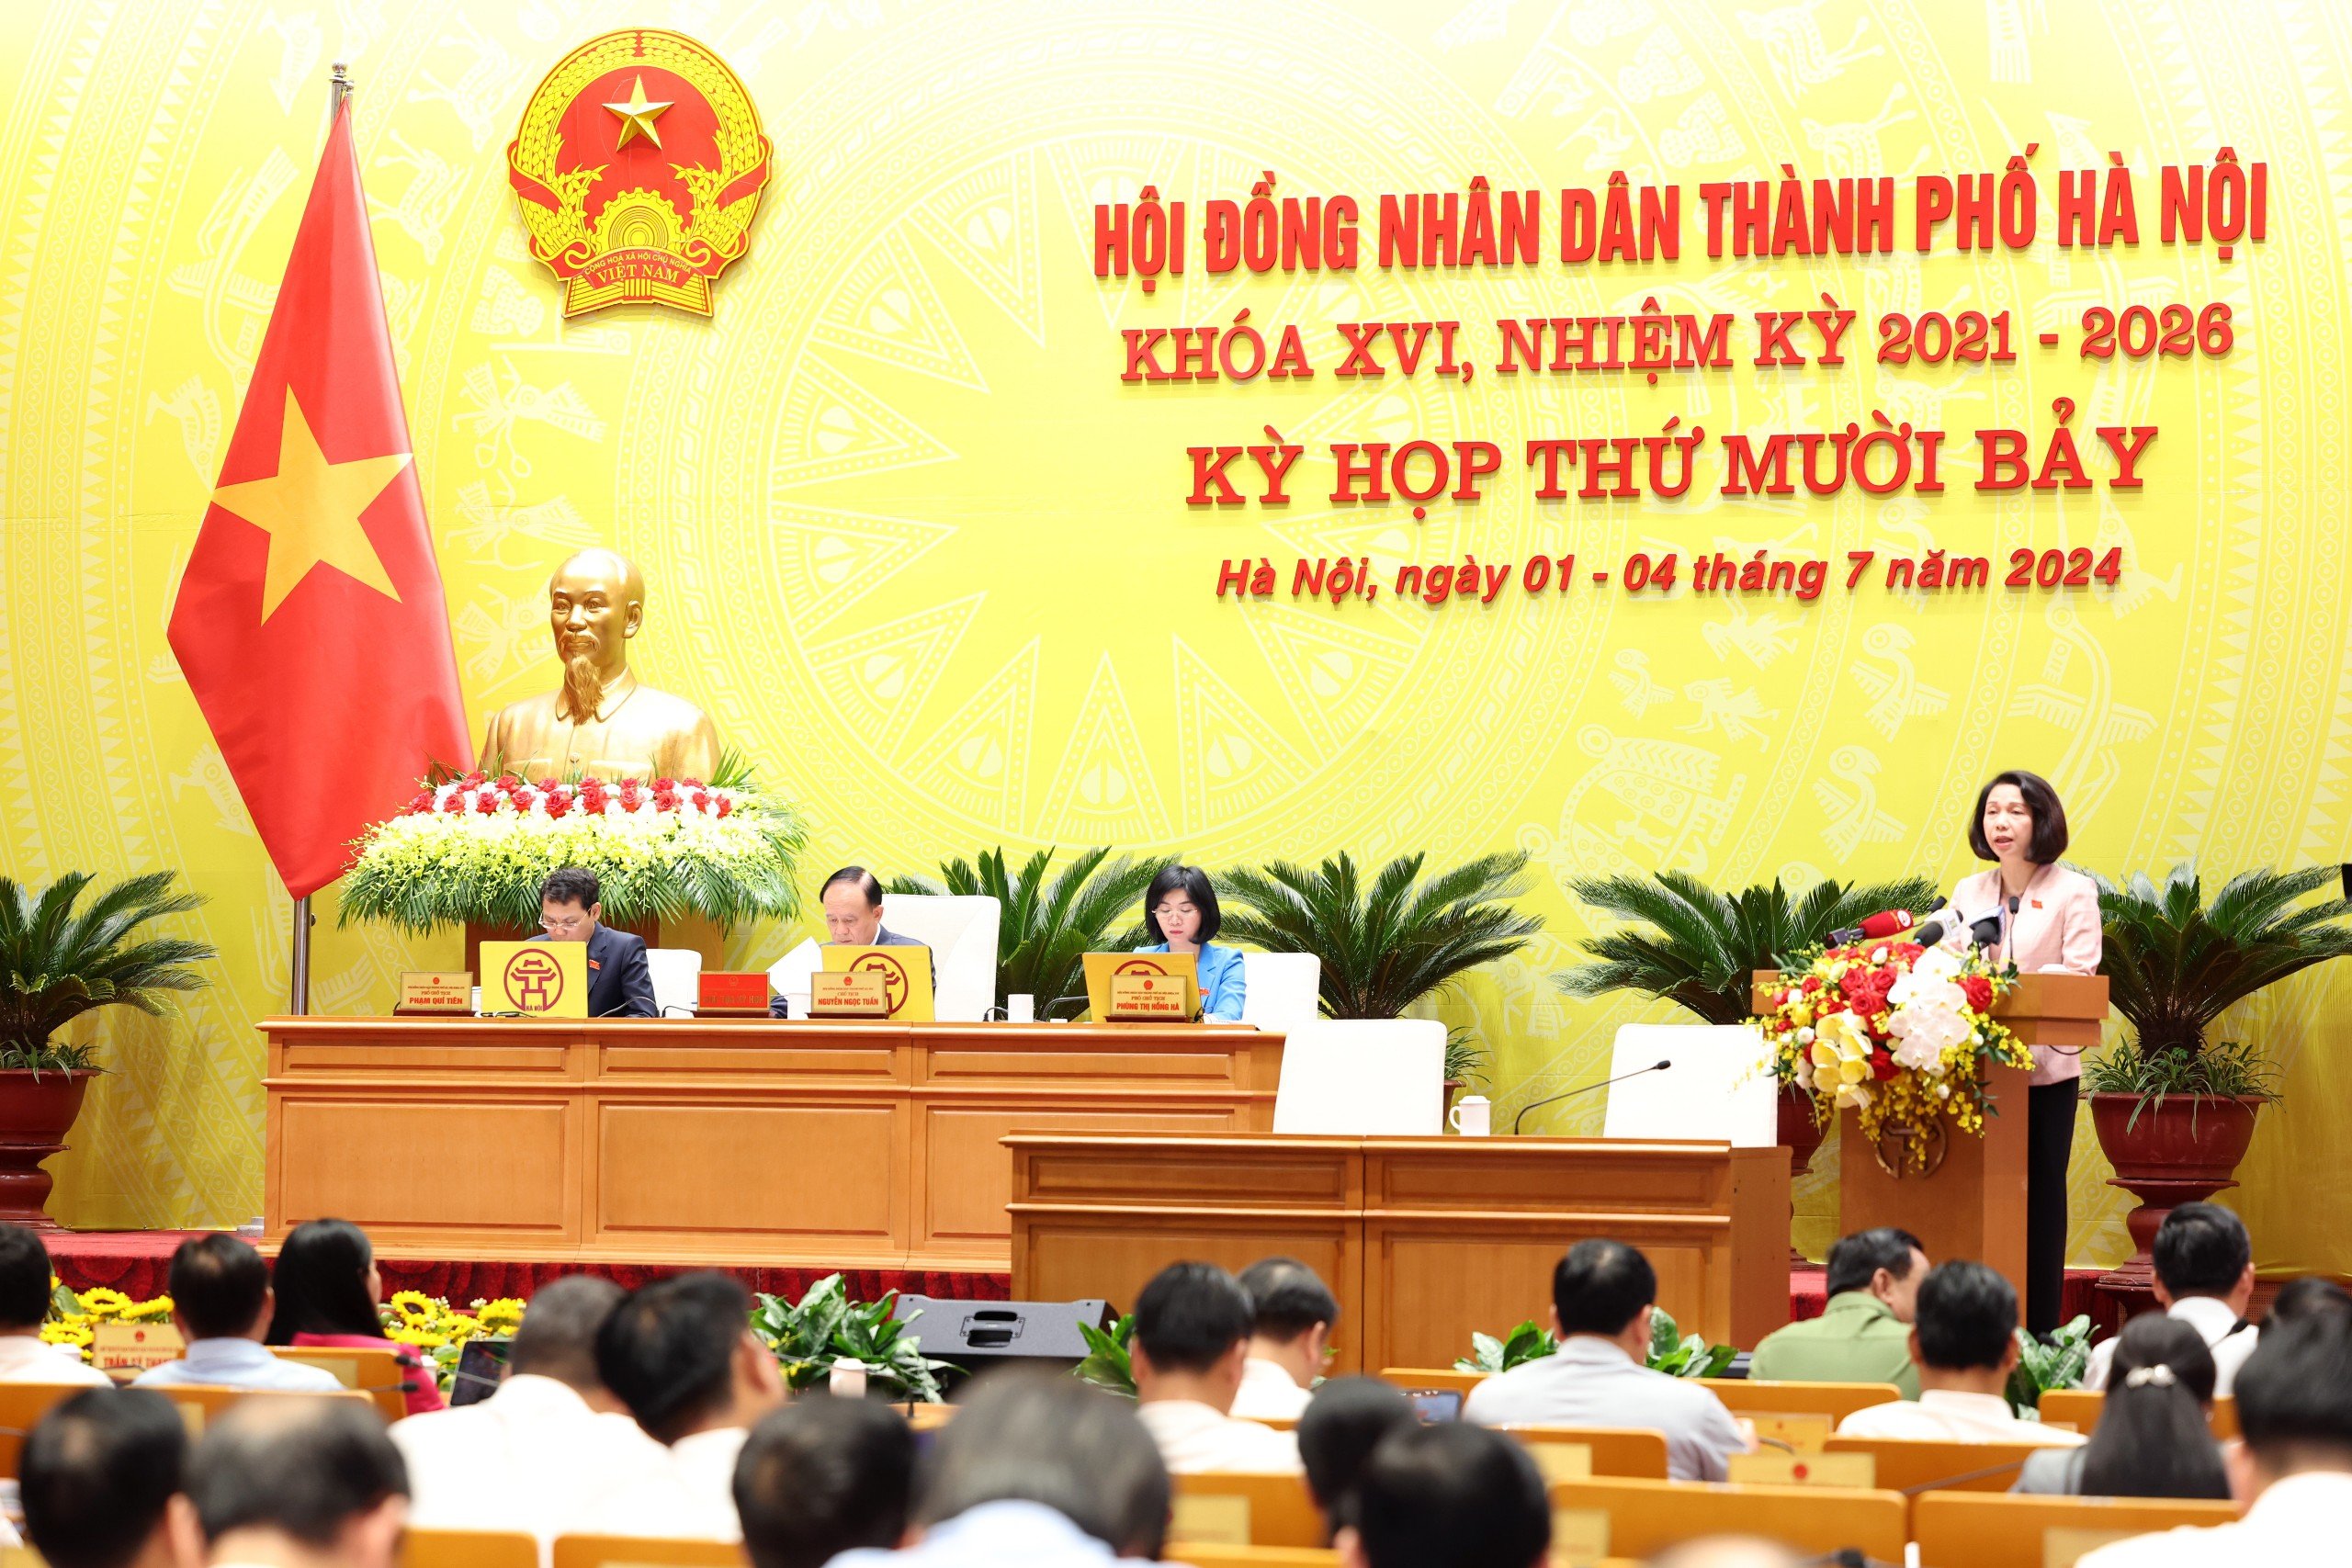 Phó Chủ tịch Hà Nội: Sẽ thay thế cán bộ không có tinh thần phục vụ người dân, doanh nghiệp- Ảnh 4.